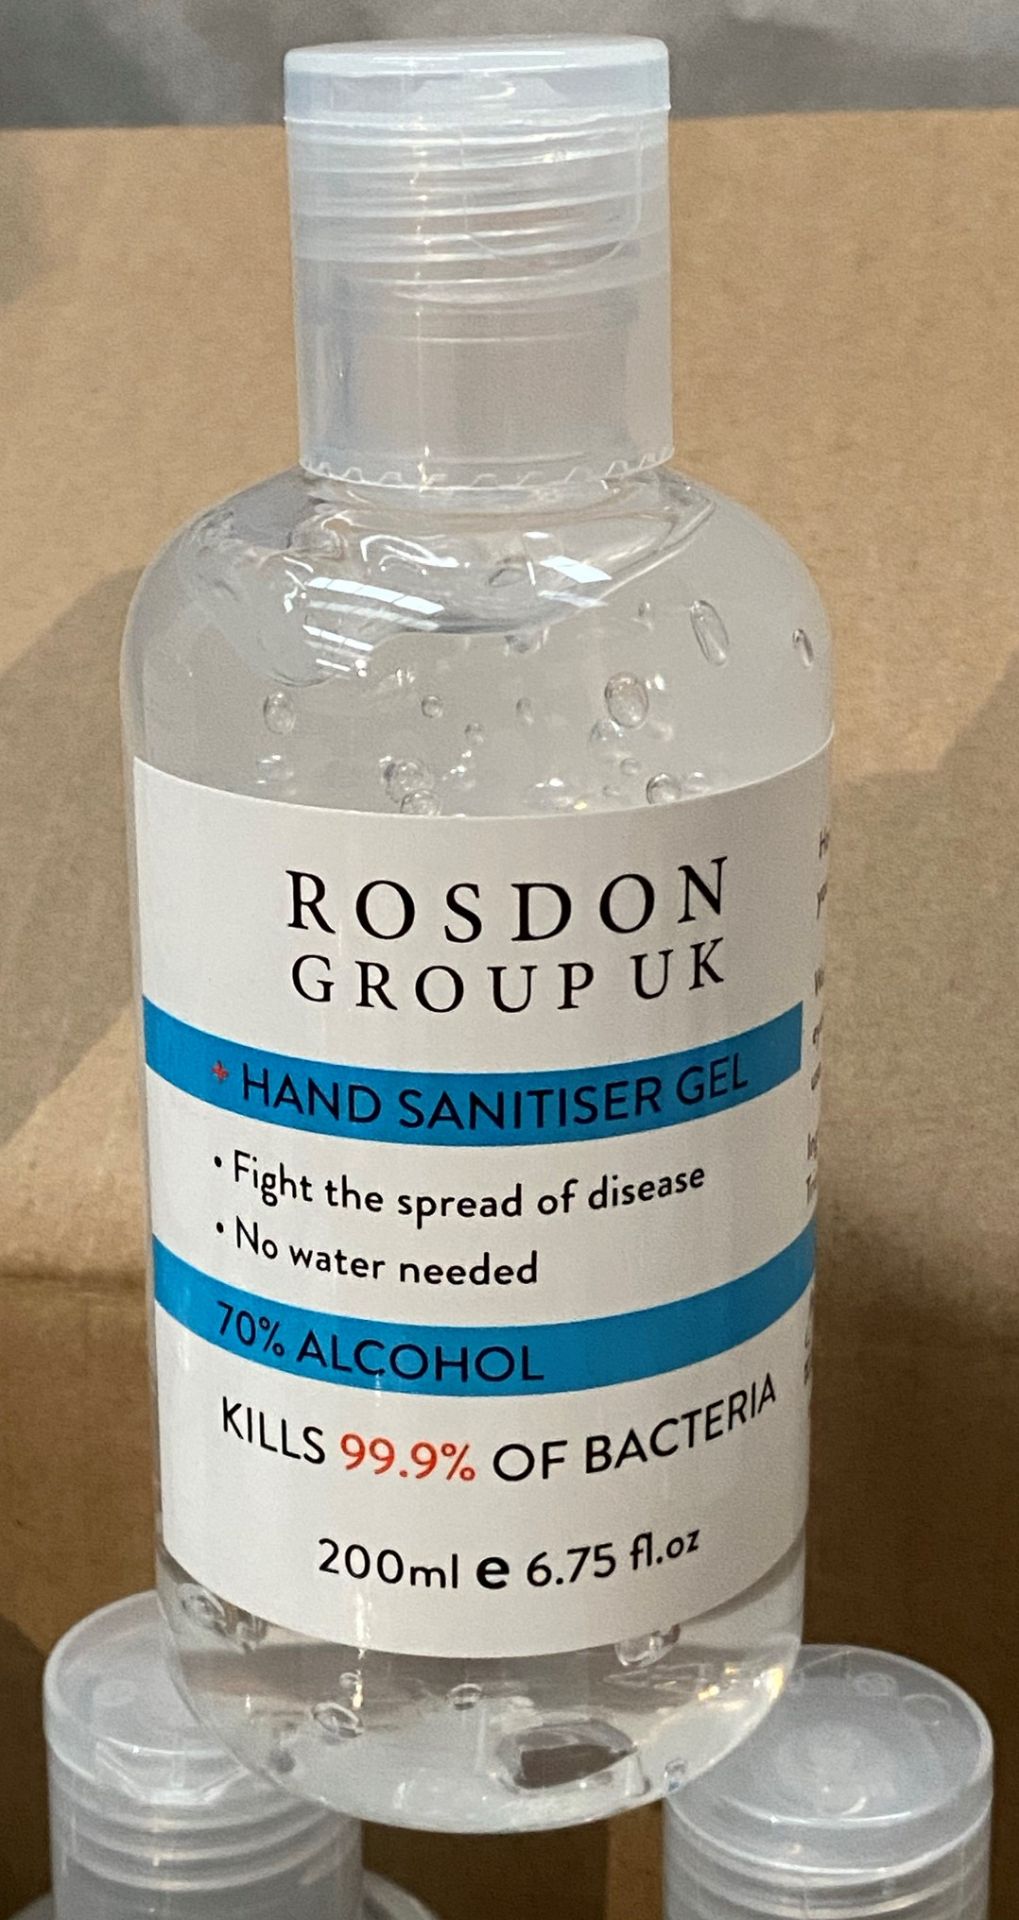 96 x 200ml flip top bottles of Rosdon Group UK hand sanitiser - 1 outer box.